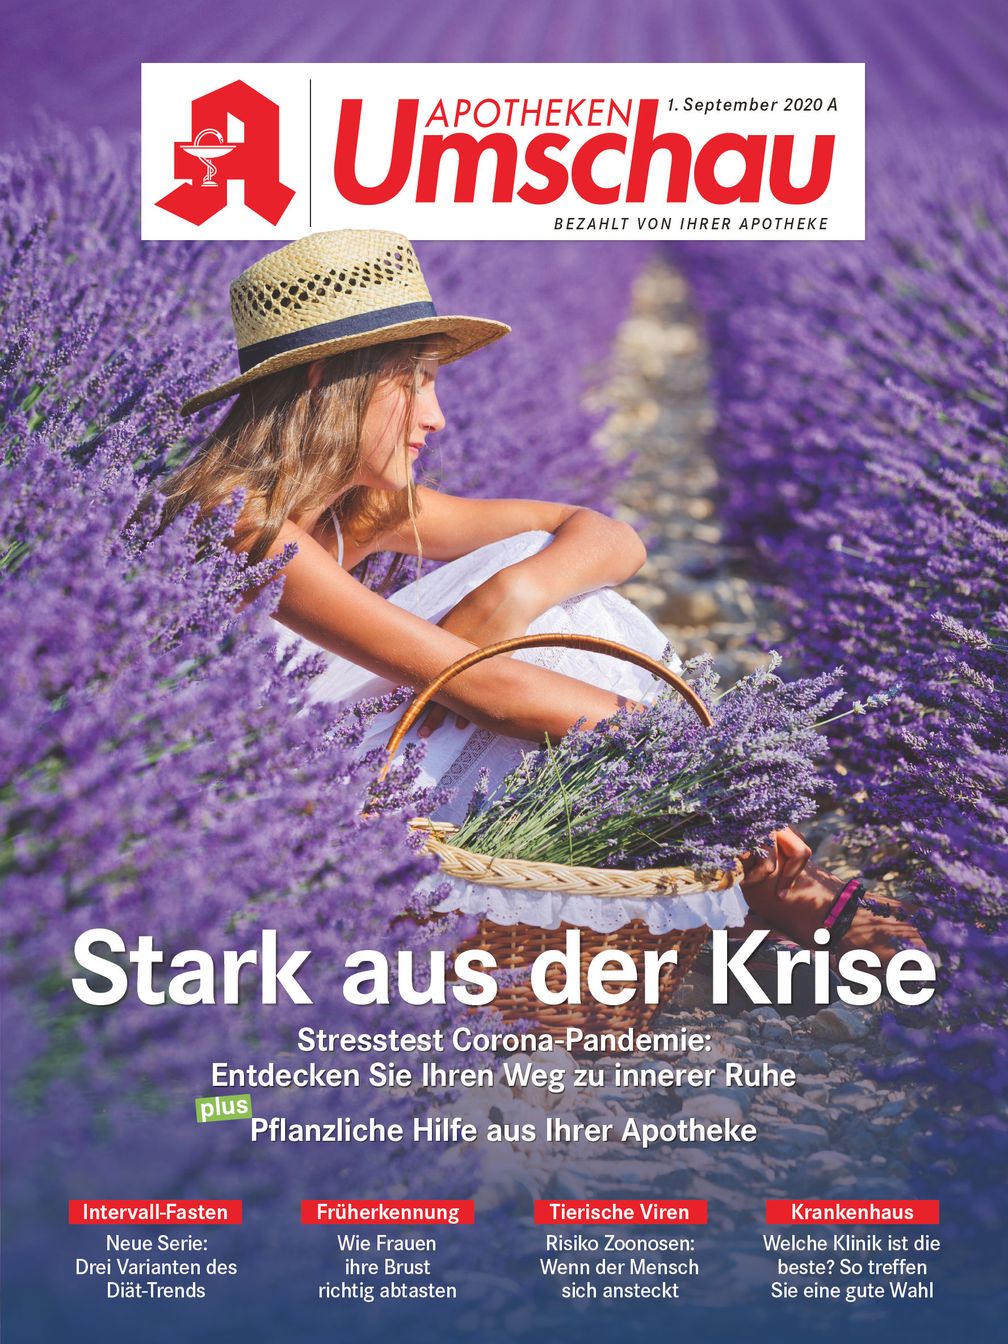 Apotheken Umschau Titelcover, Ausgabe 9A/2020.  Bild: "obs/Wort & Bild Verlag - Gesundheitsmeldungen"